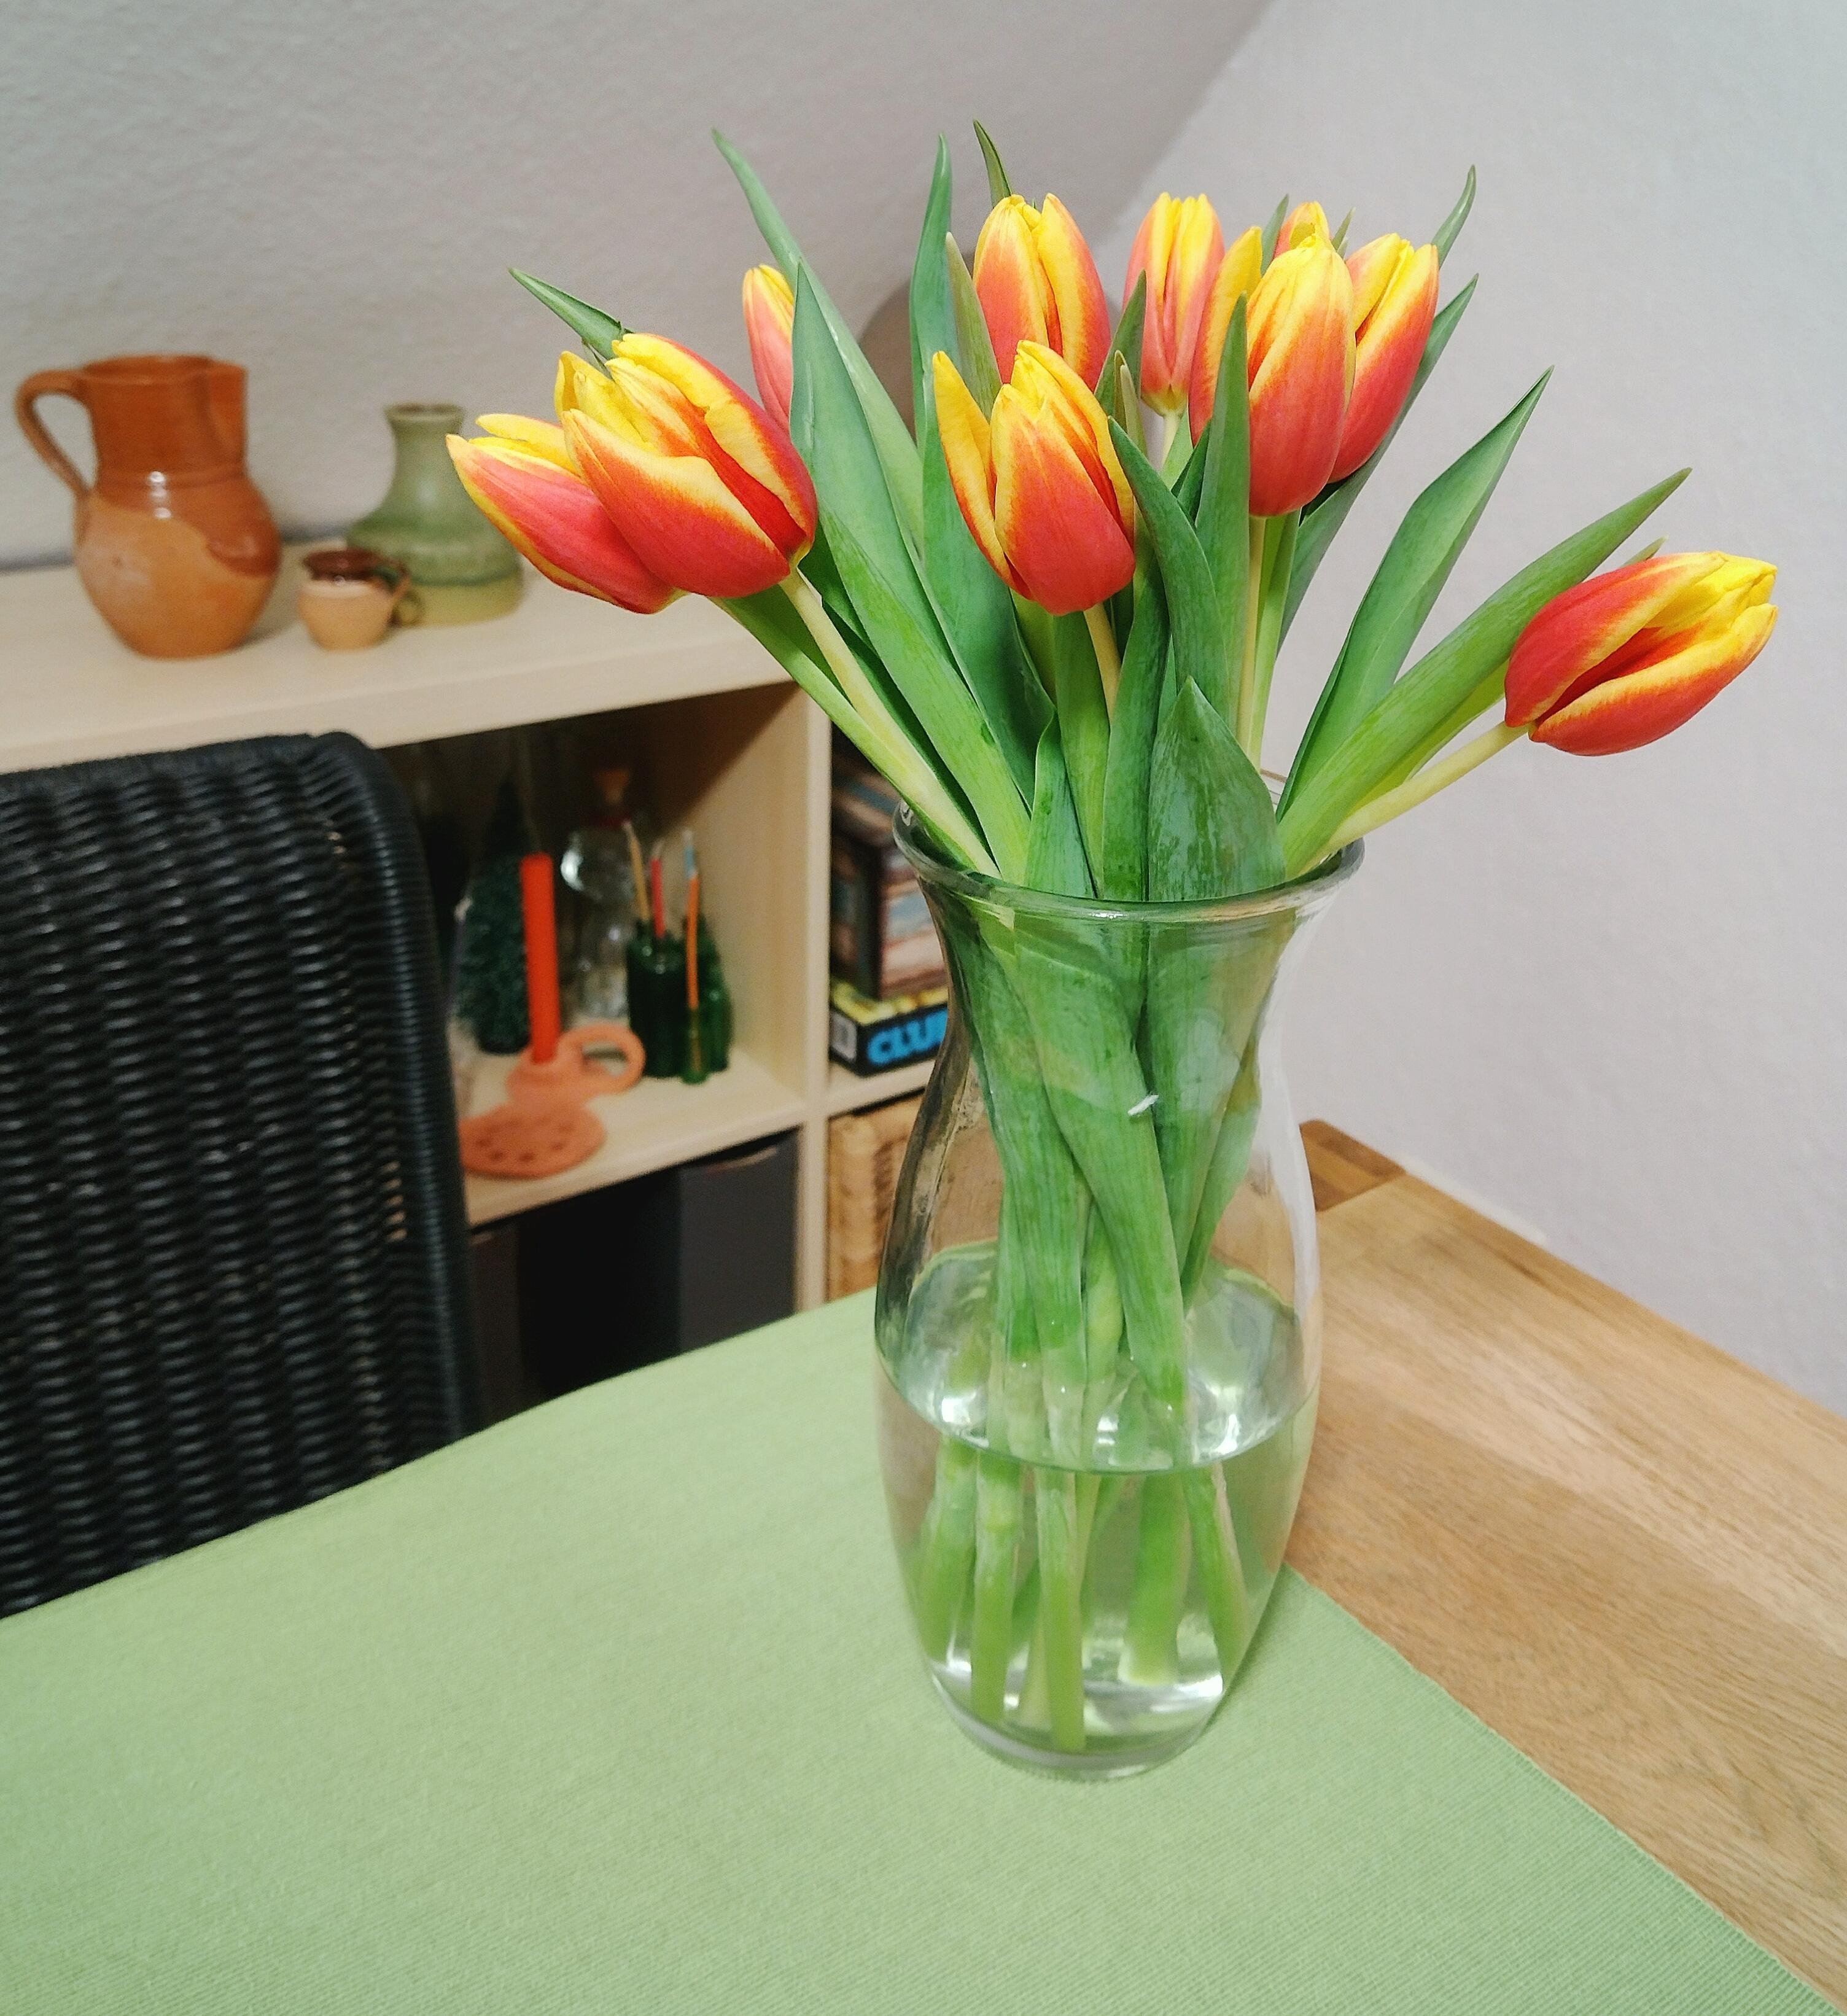 #tulpenliebe #tulpen #frischeblumen #blumenliebe #vase #glasvase